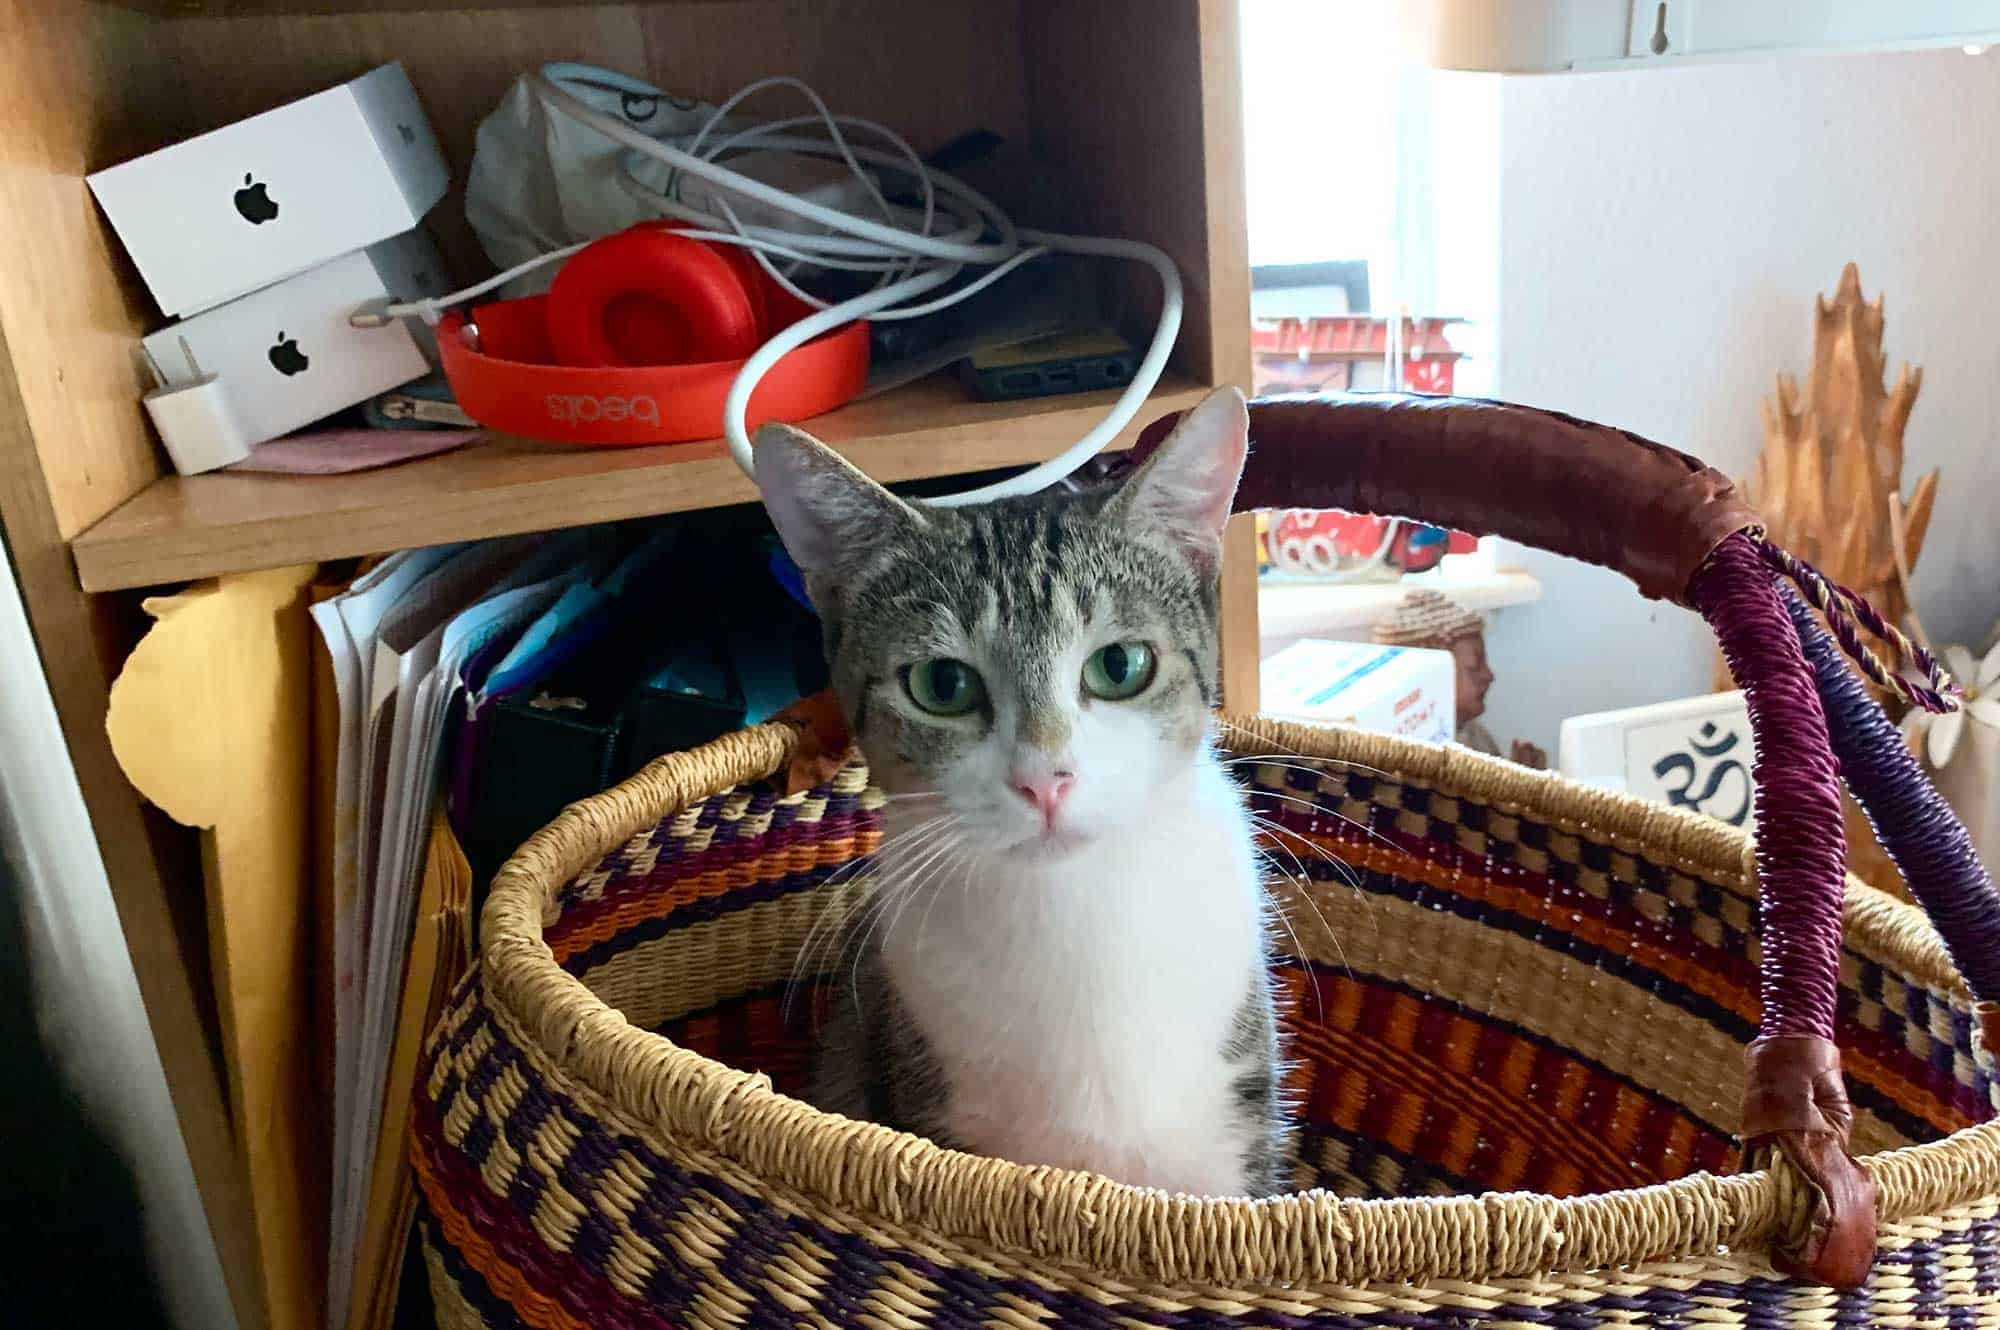 A cat sitting in a decorative basket